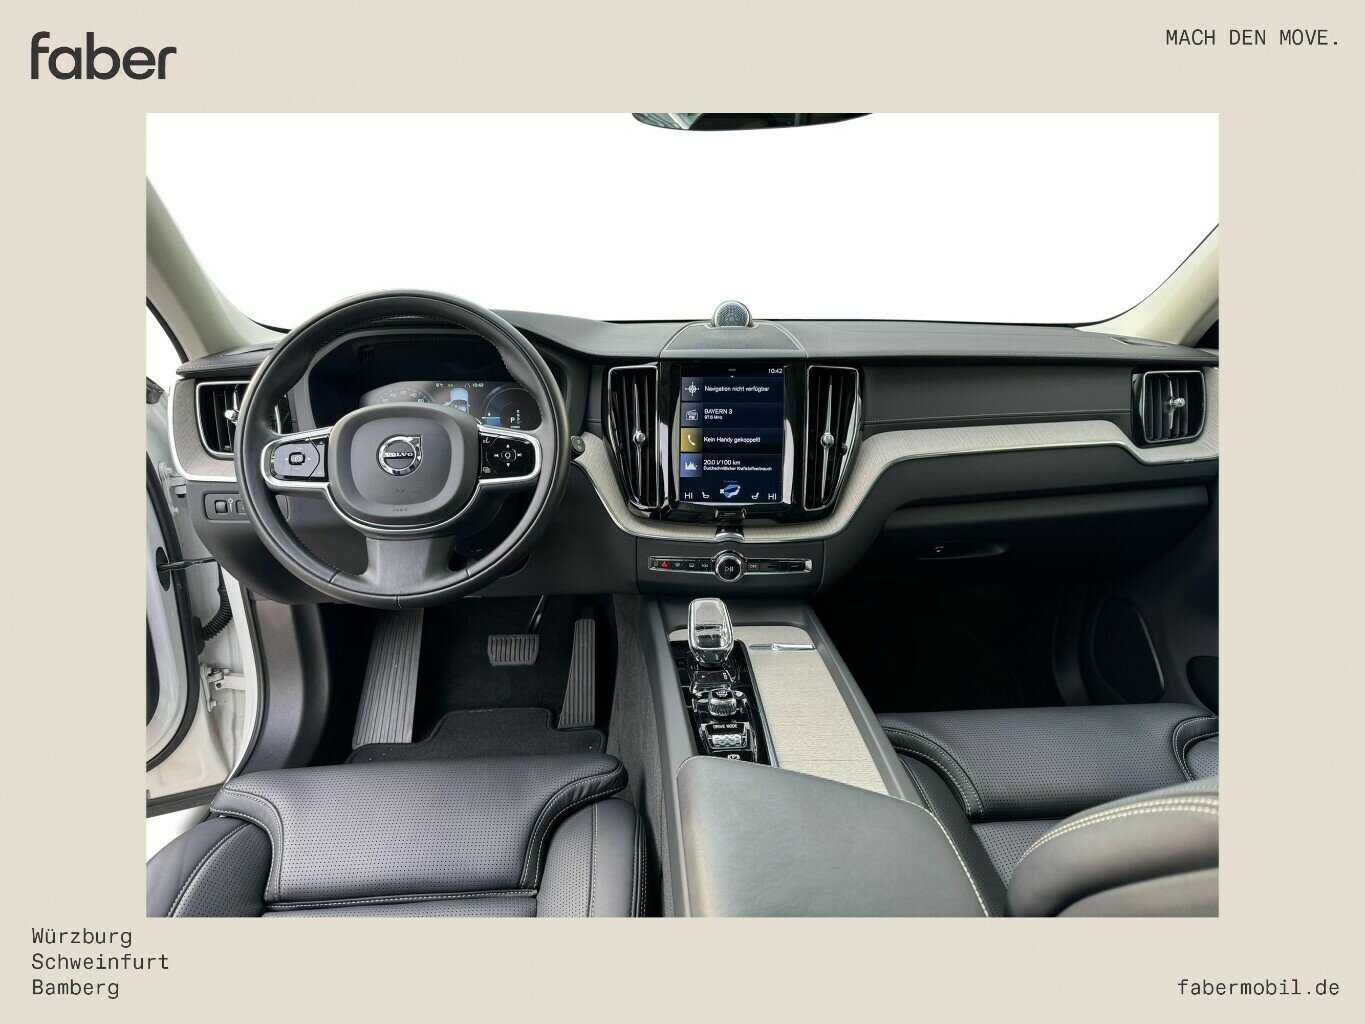 Volvo  T6 Inscription Plug-In Hybrid AWD